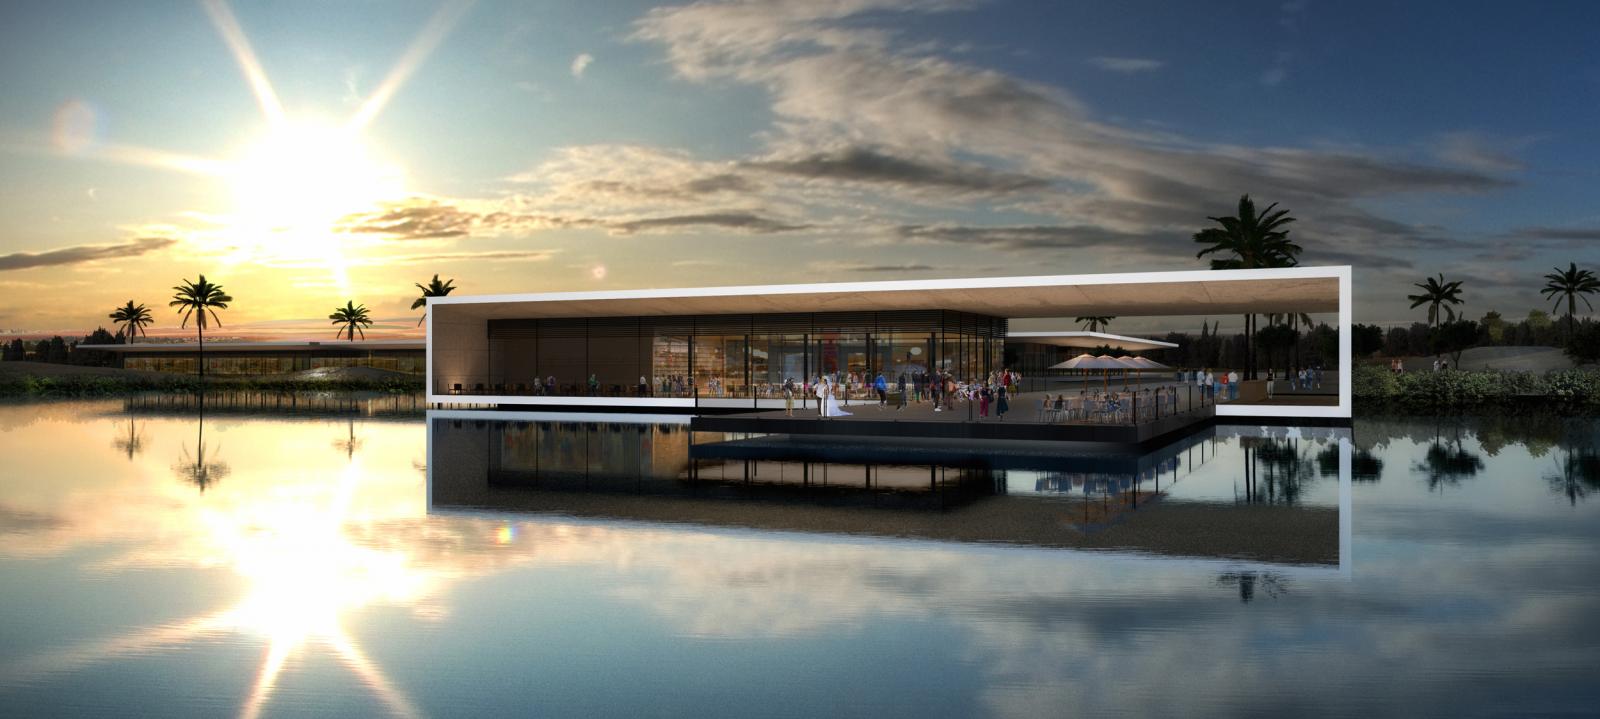 הדמייה של מסעדה באגם, הפרויקט הבא של עיריית באר שבע